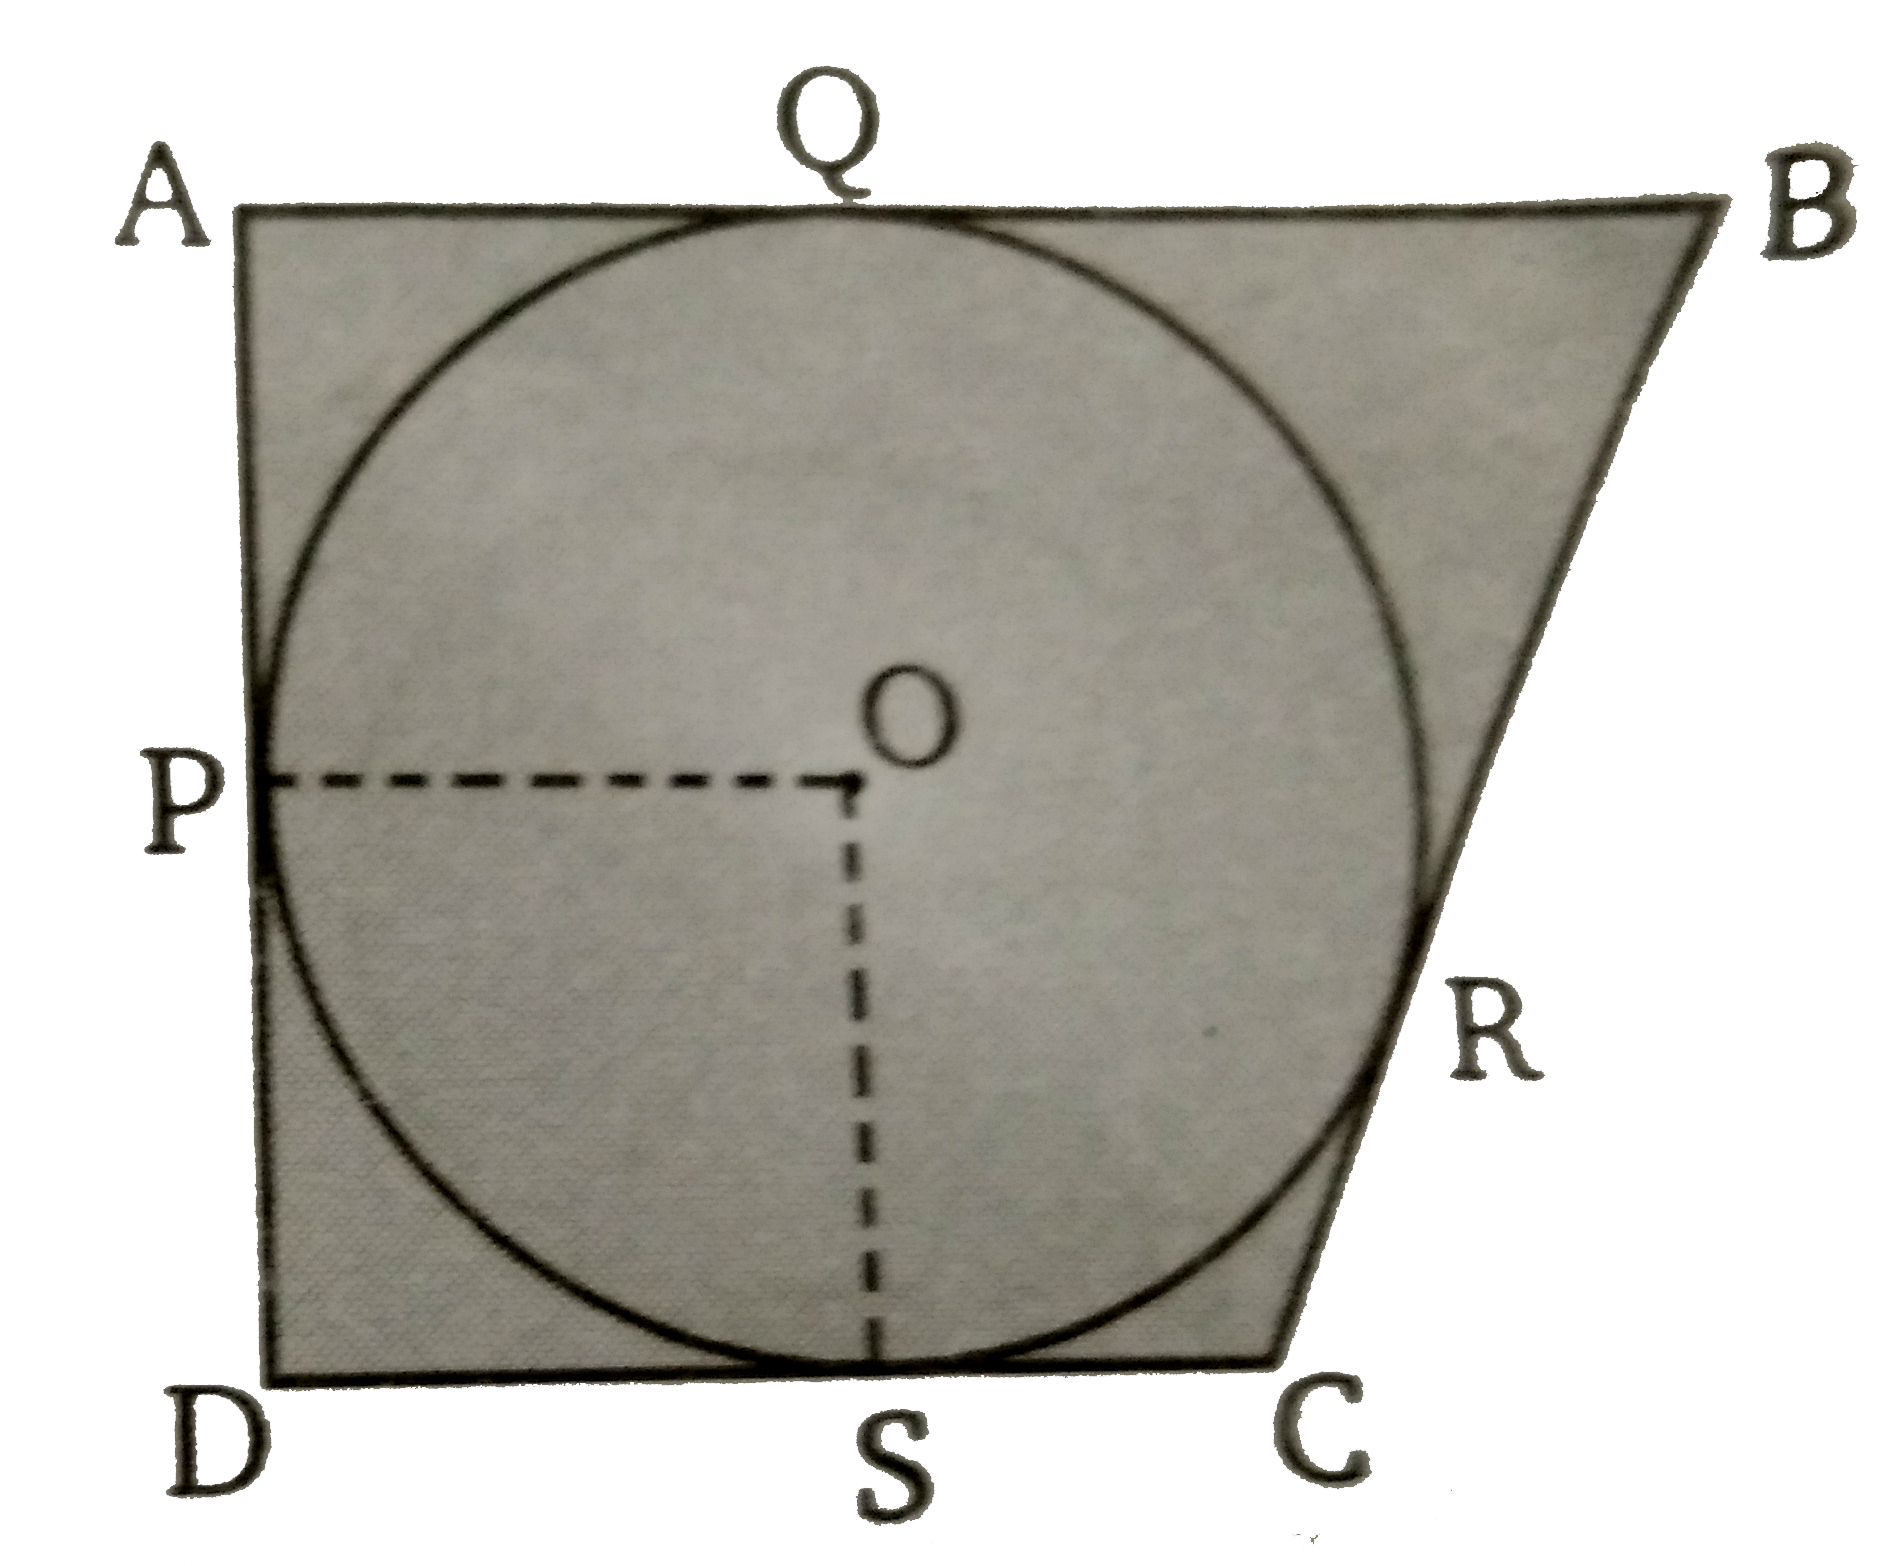 एक चतुर्भुज ABCD  (चित्र) के अन्दर एक वृत्त इस प्रकार है कि BC = 38 सेमी, BQ = 27 सेमी,  DC = 25  सेमी तथा AD, DC पर लम्ब है। वृत्त की त्रिज्या ज्ञात कीजिए ।